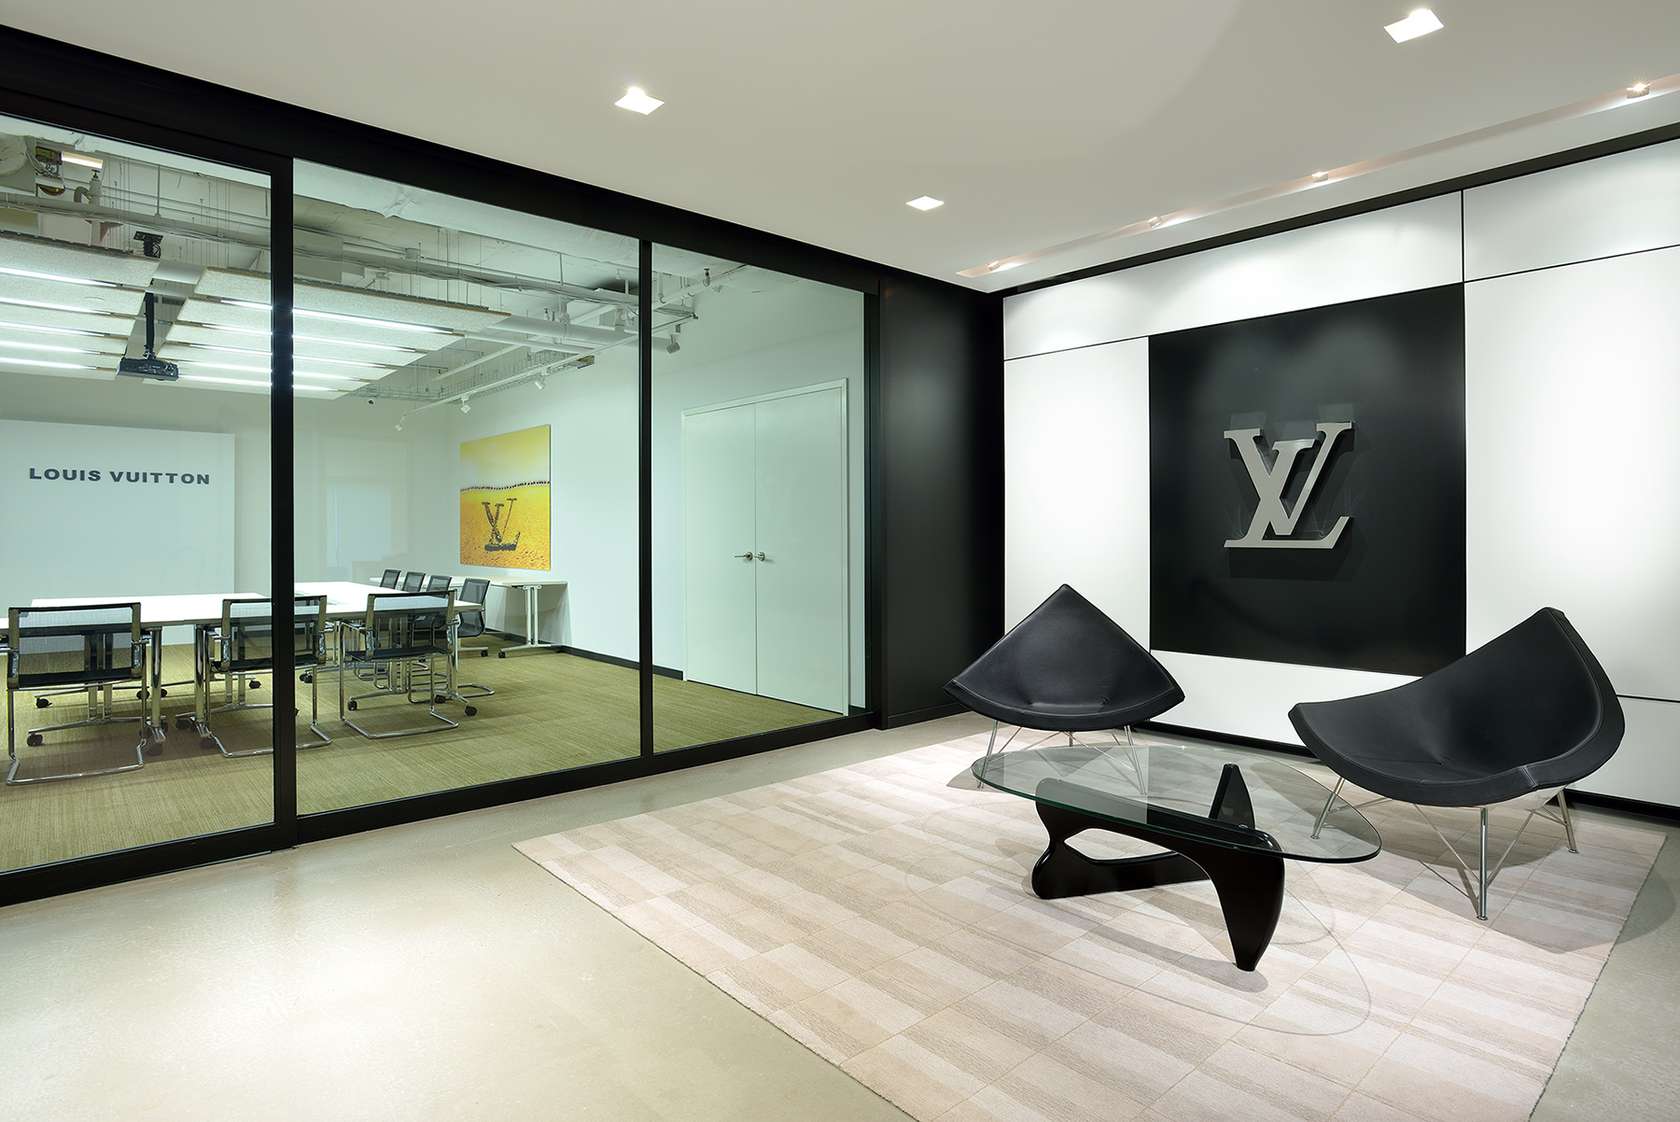 Louis Vuitton Alma Handbag 371942